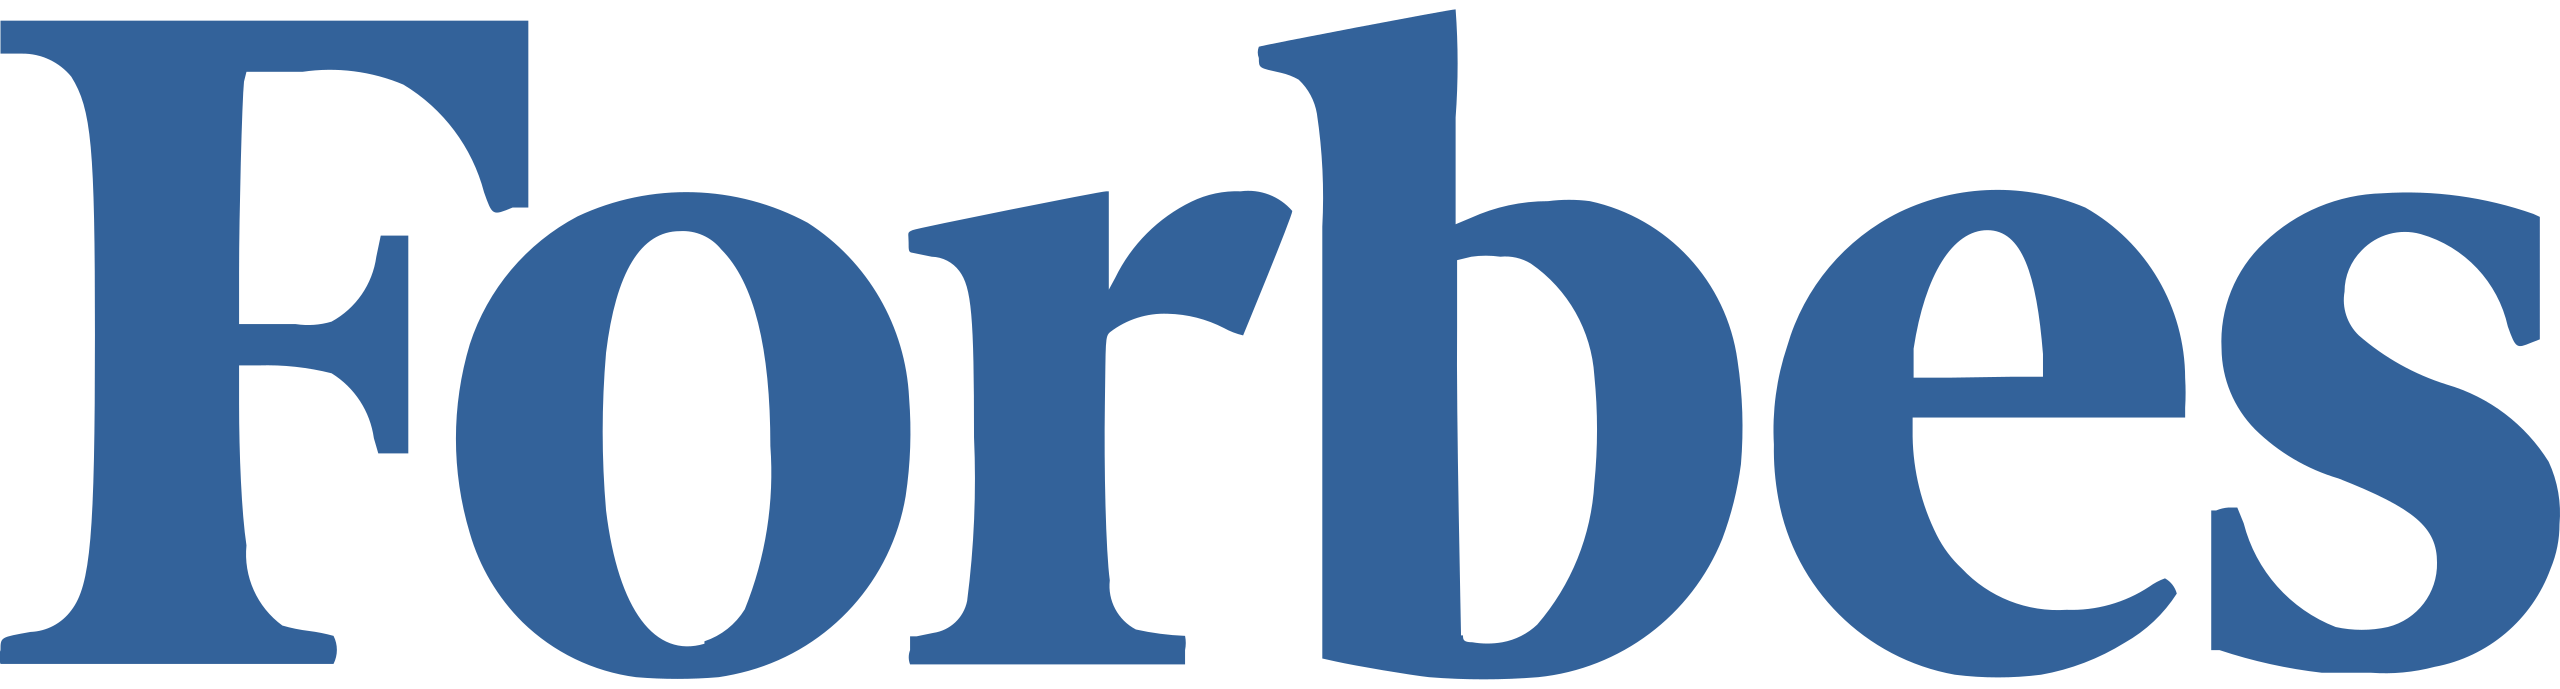 Forbes_logo.svg_.png